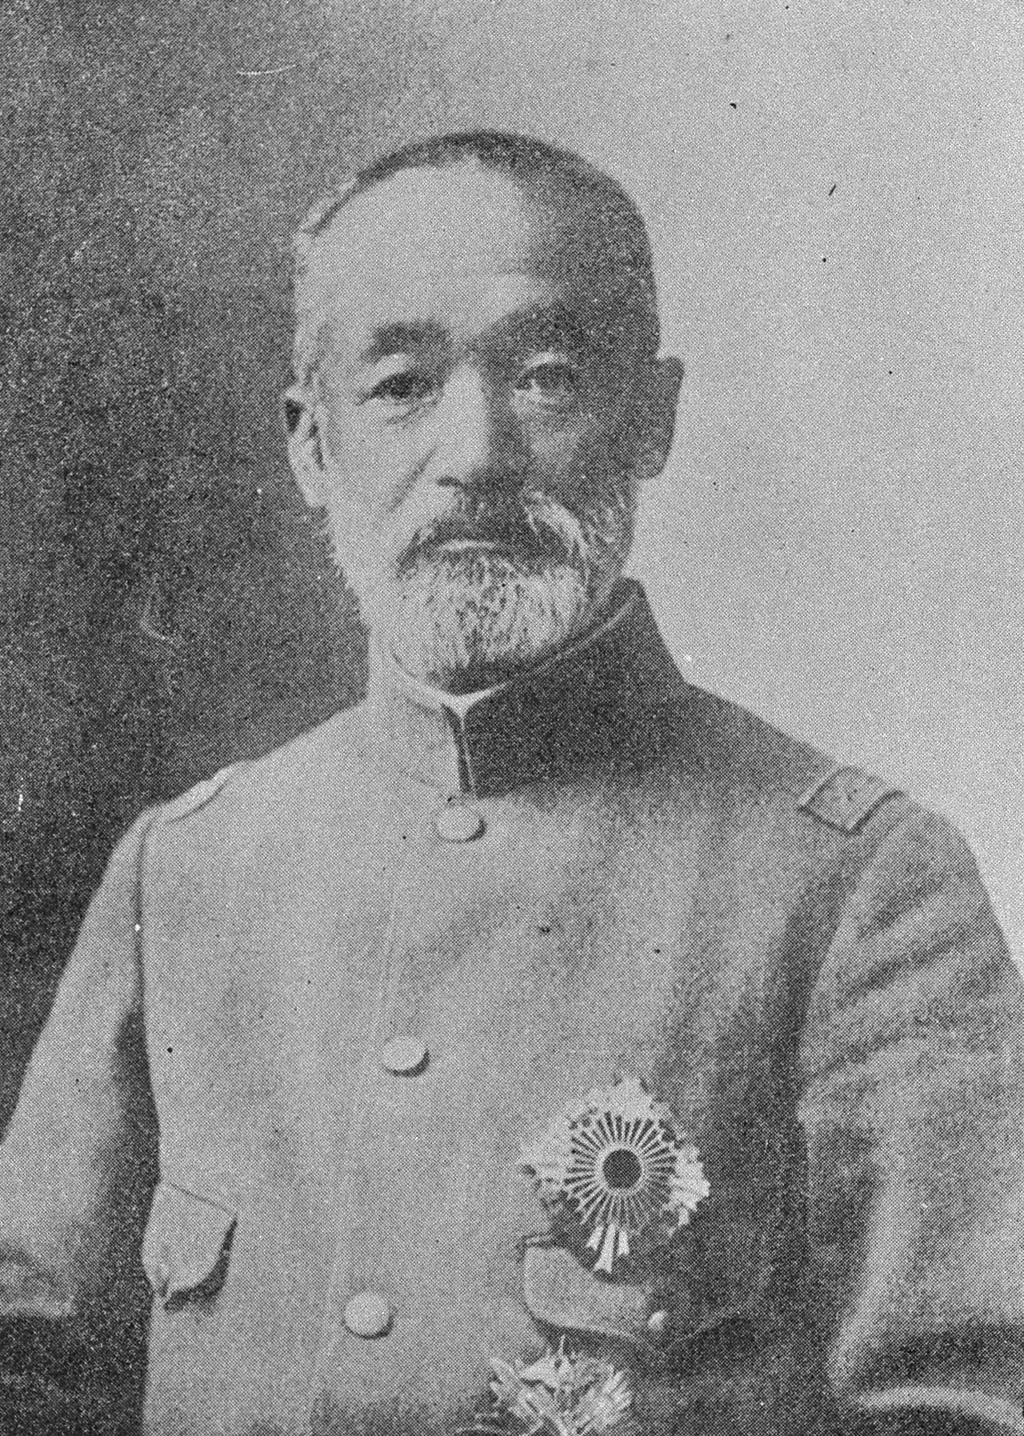 Portrait of NOGI Maresuke8